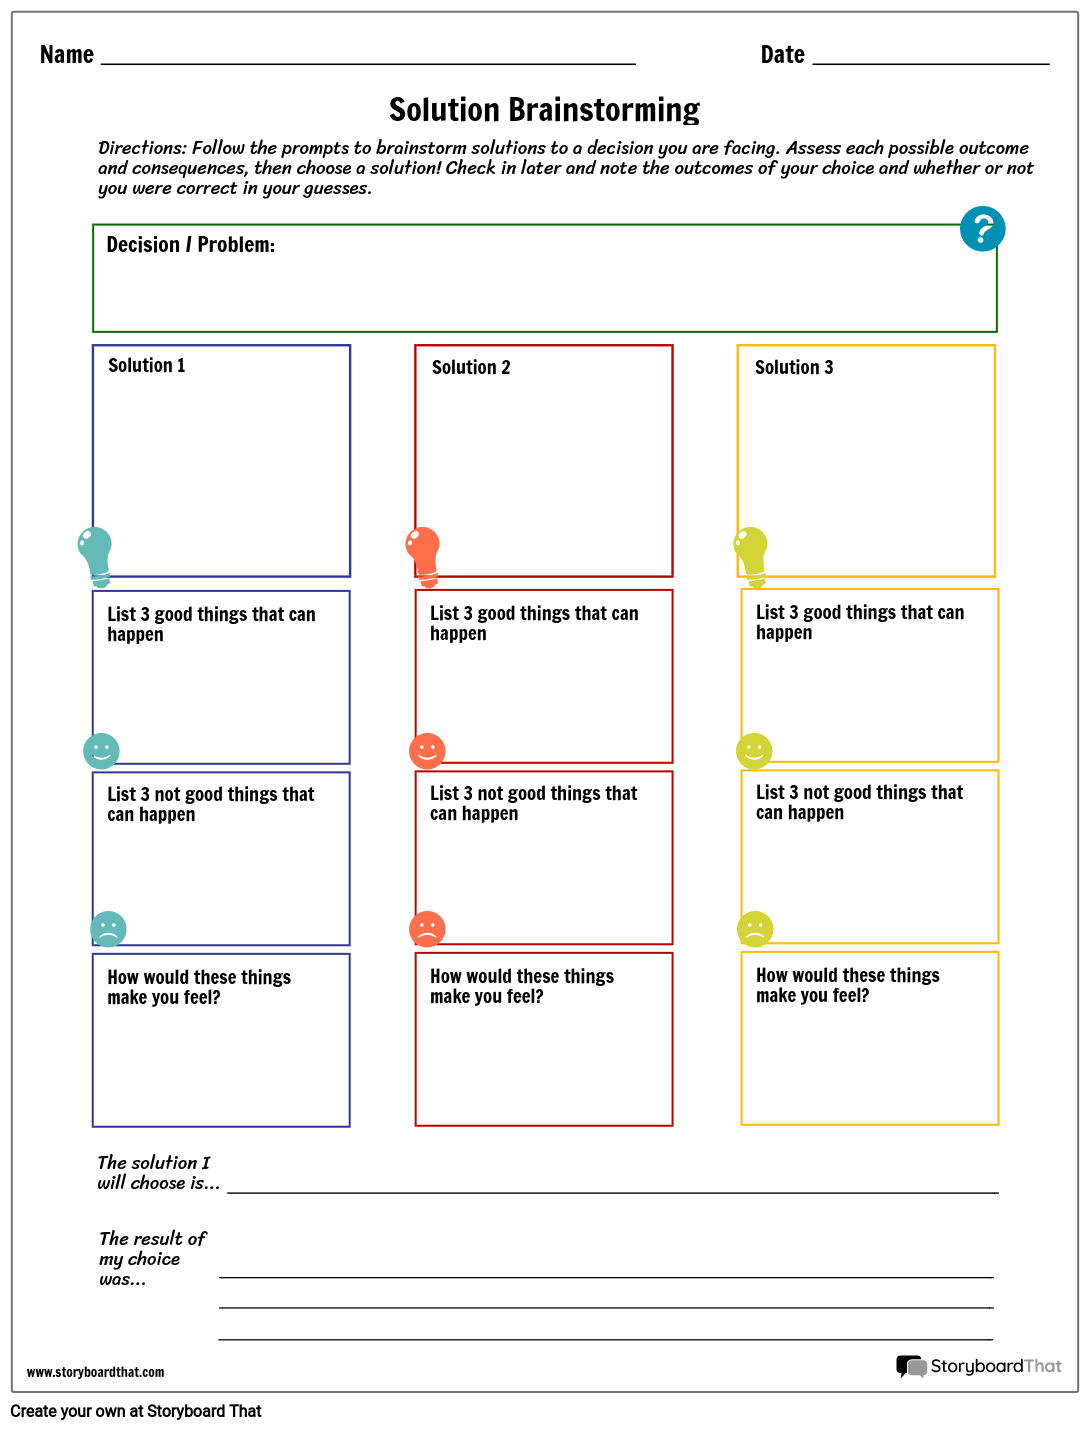 brainstorming-solutions-worksheet-template-storyboard